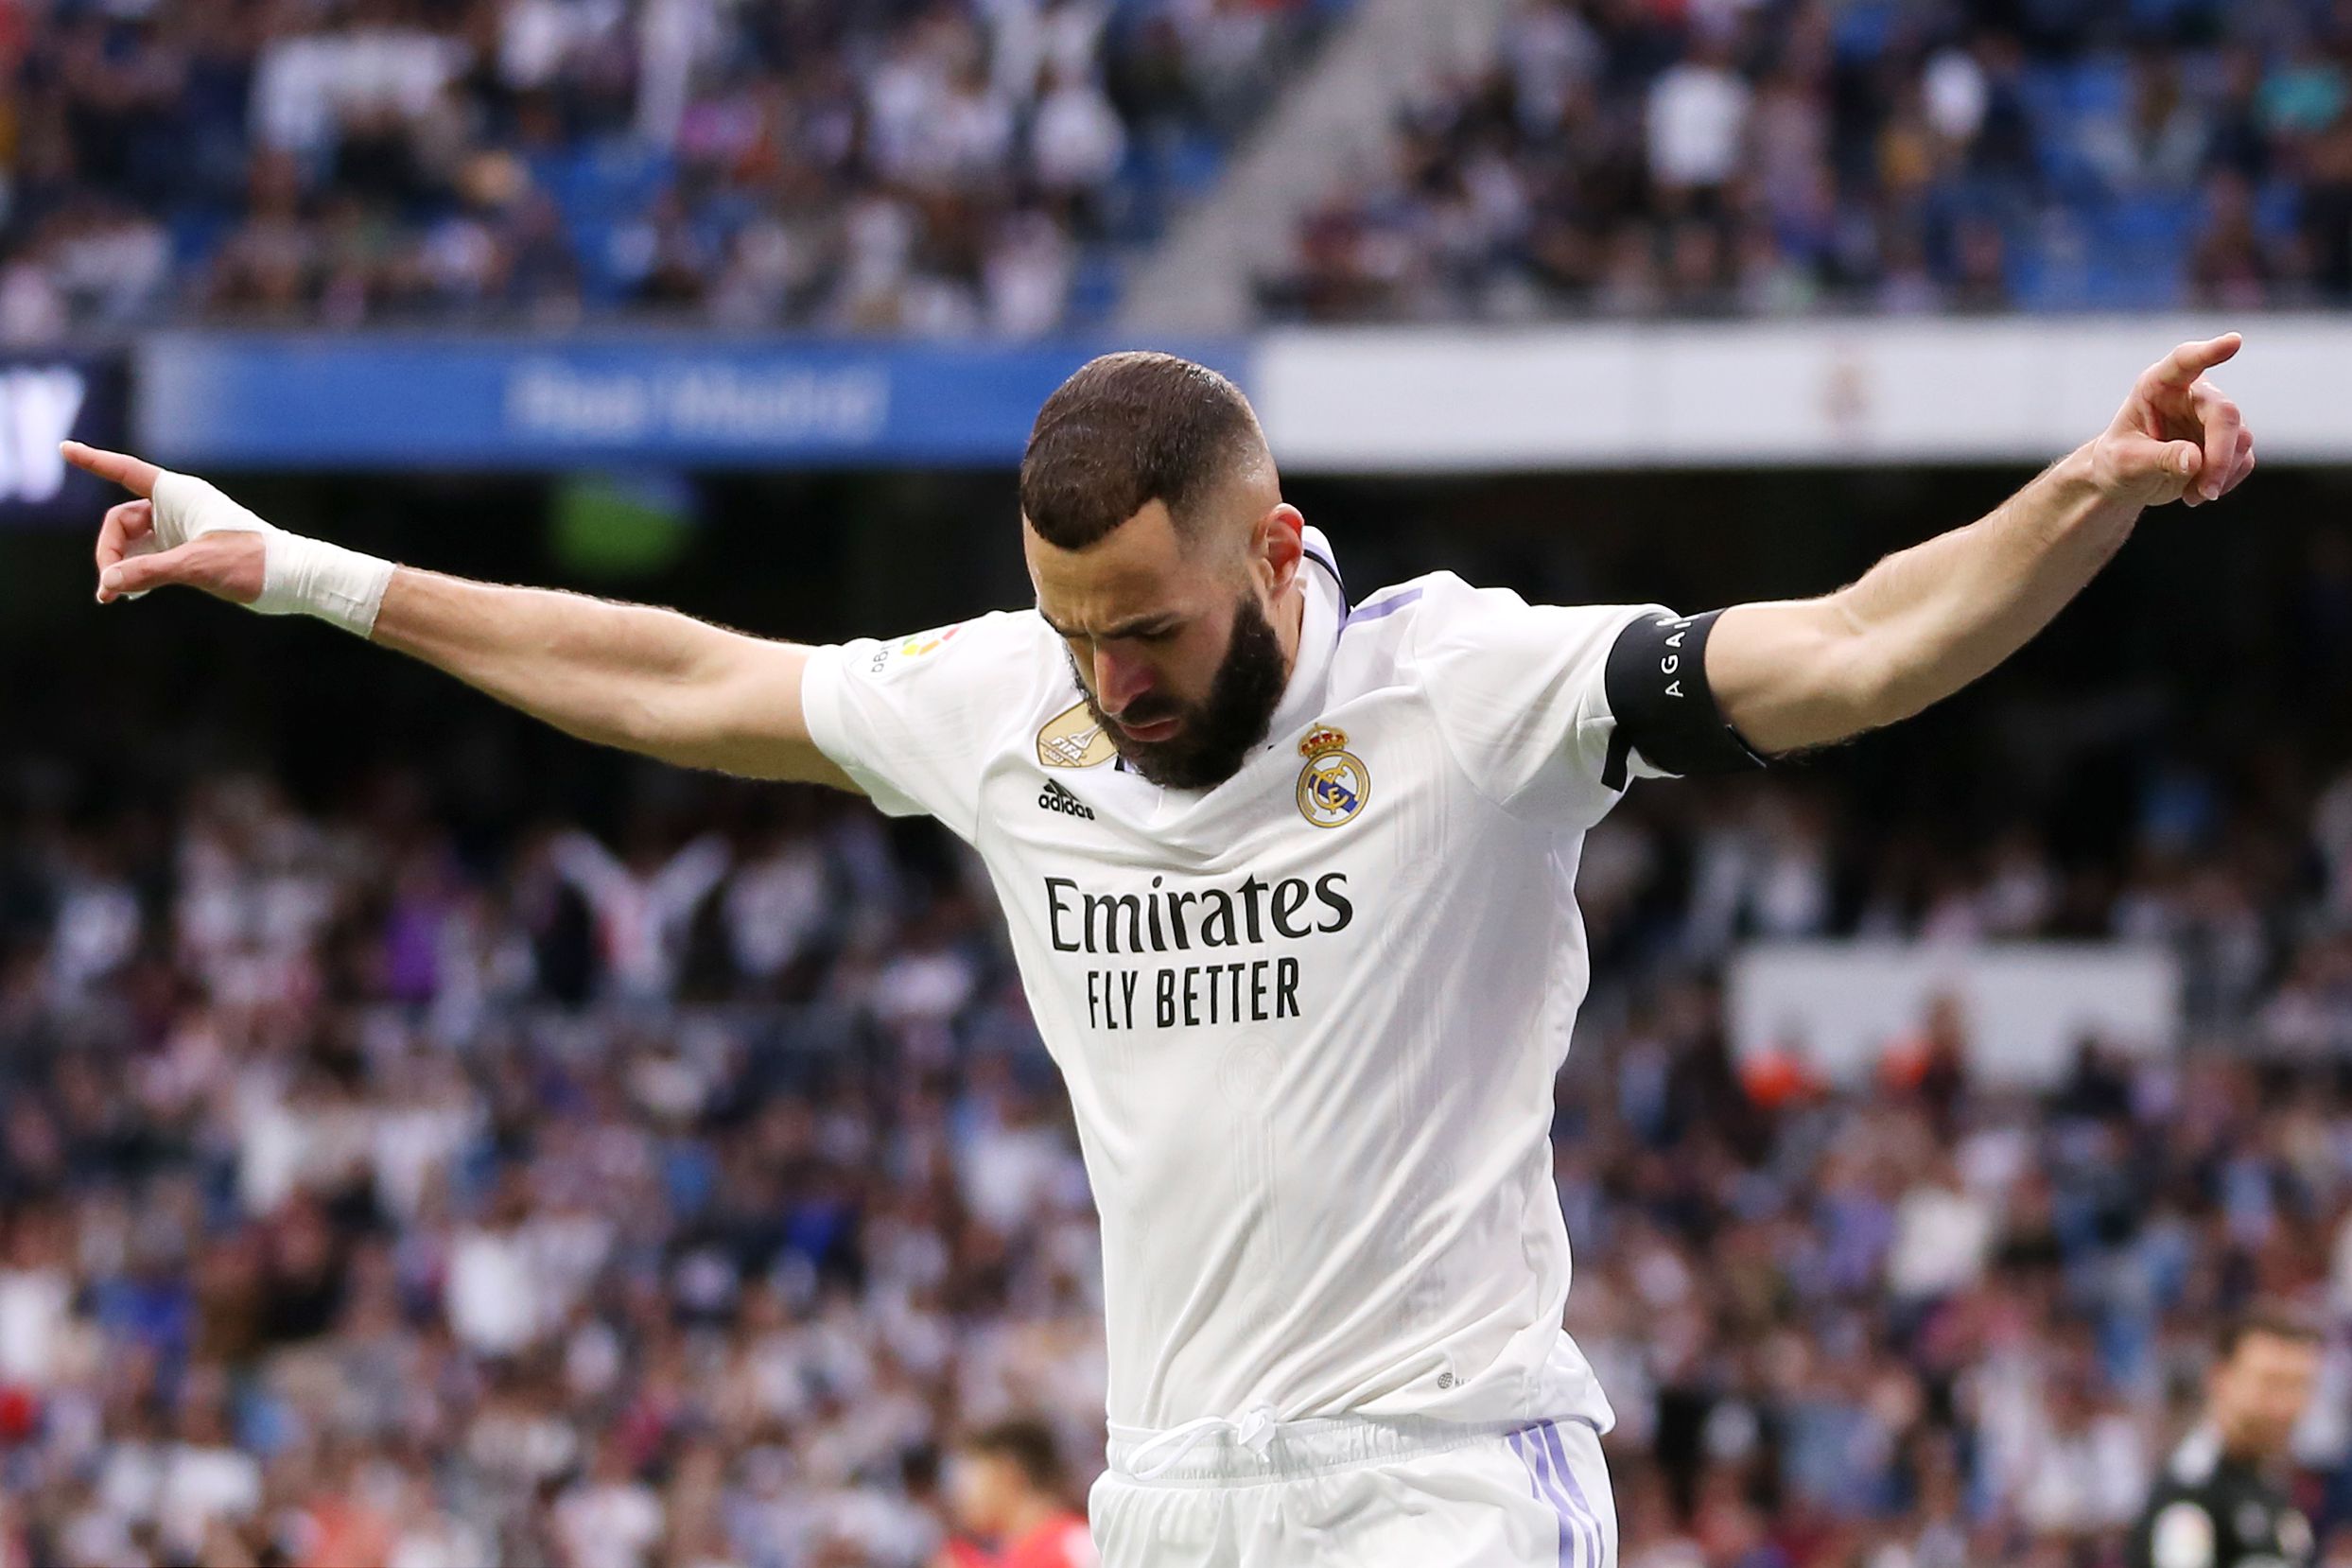 Rodrygo mentette meg a Real Madridot az újabb pontvesztéstől – videóval